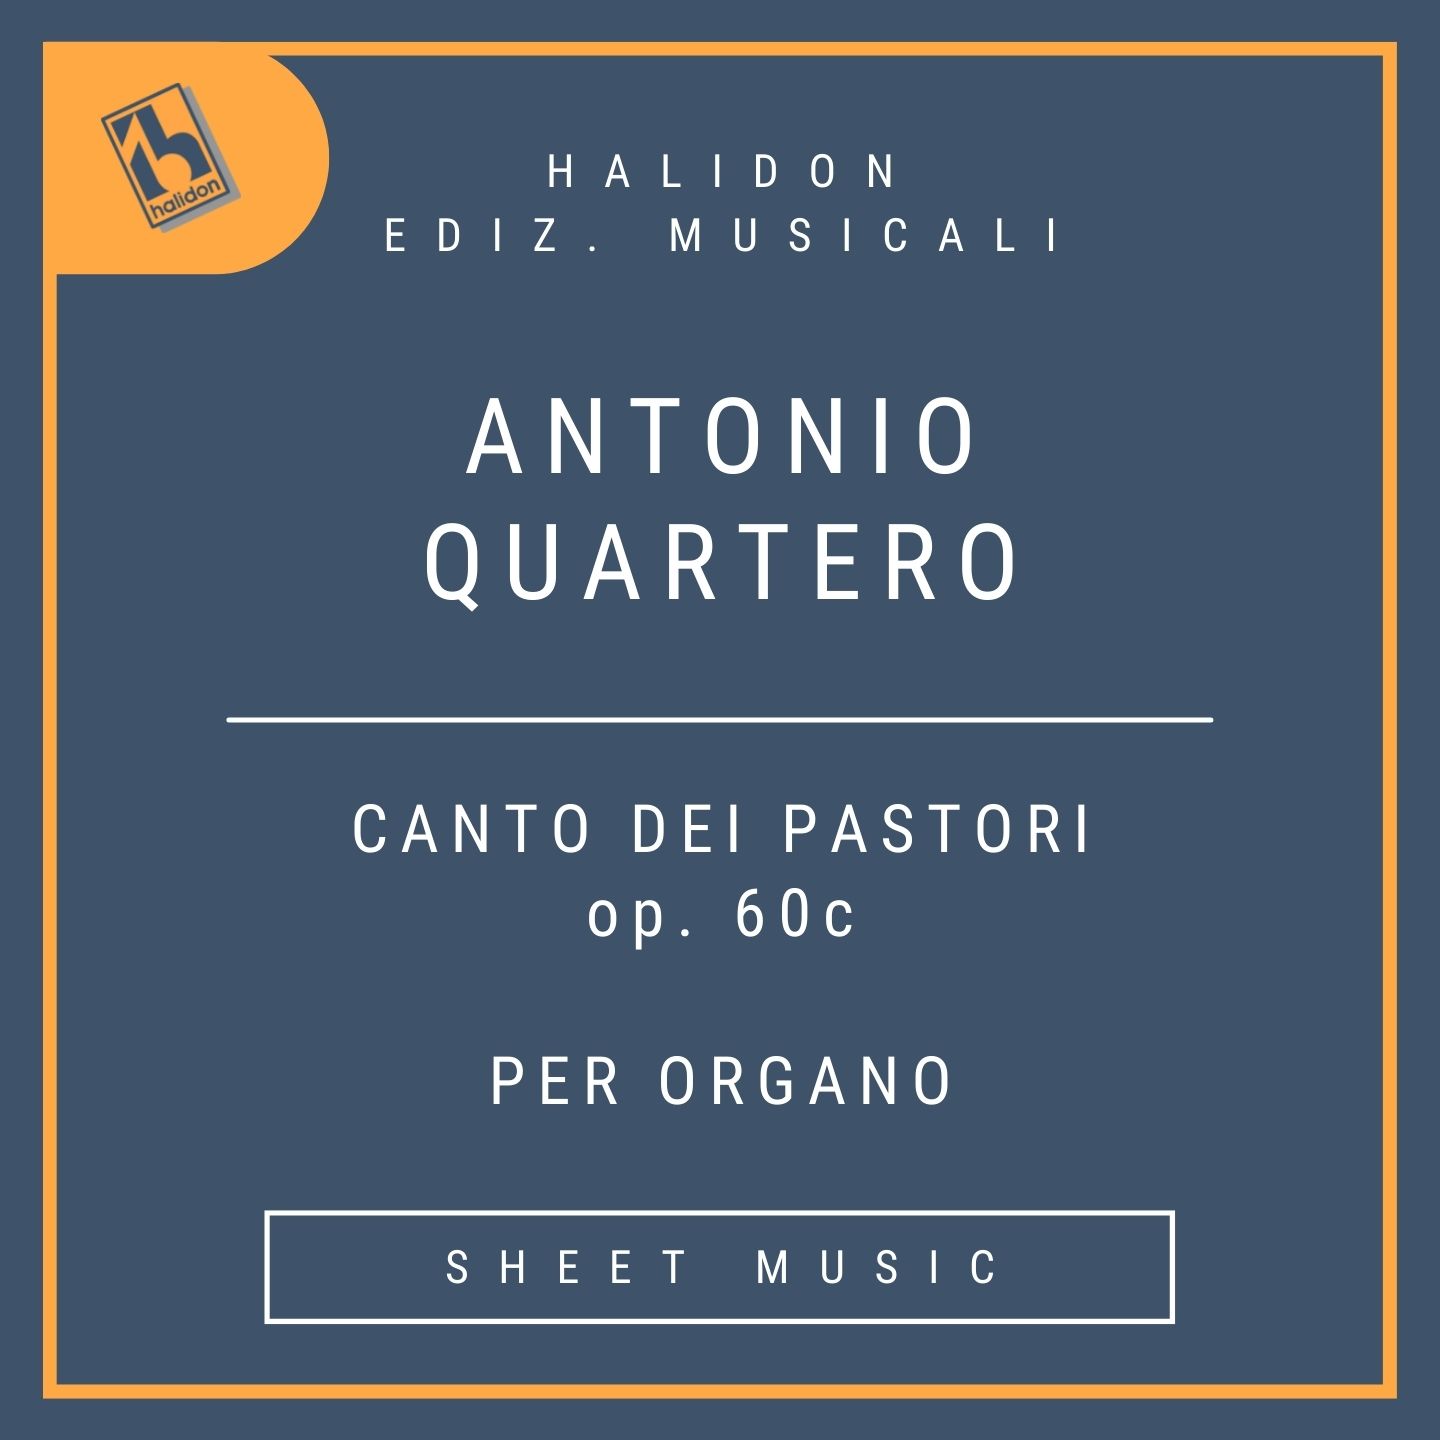 Antonio Quartero - Canto dei pastori Op. 60c